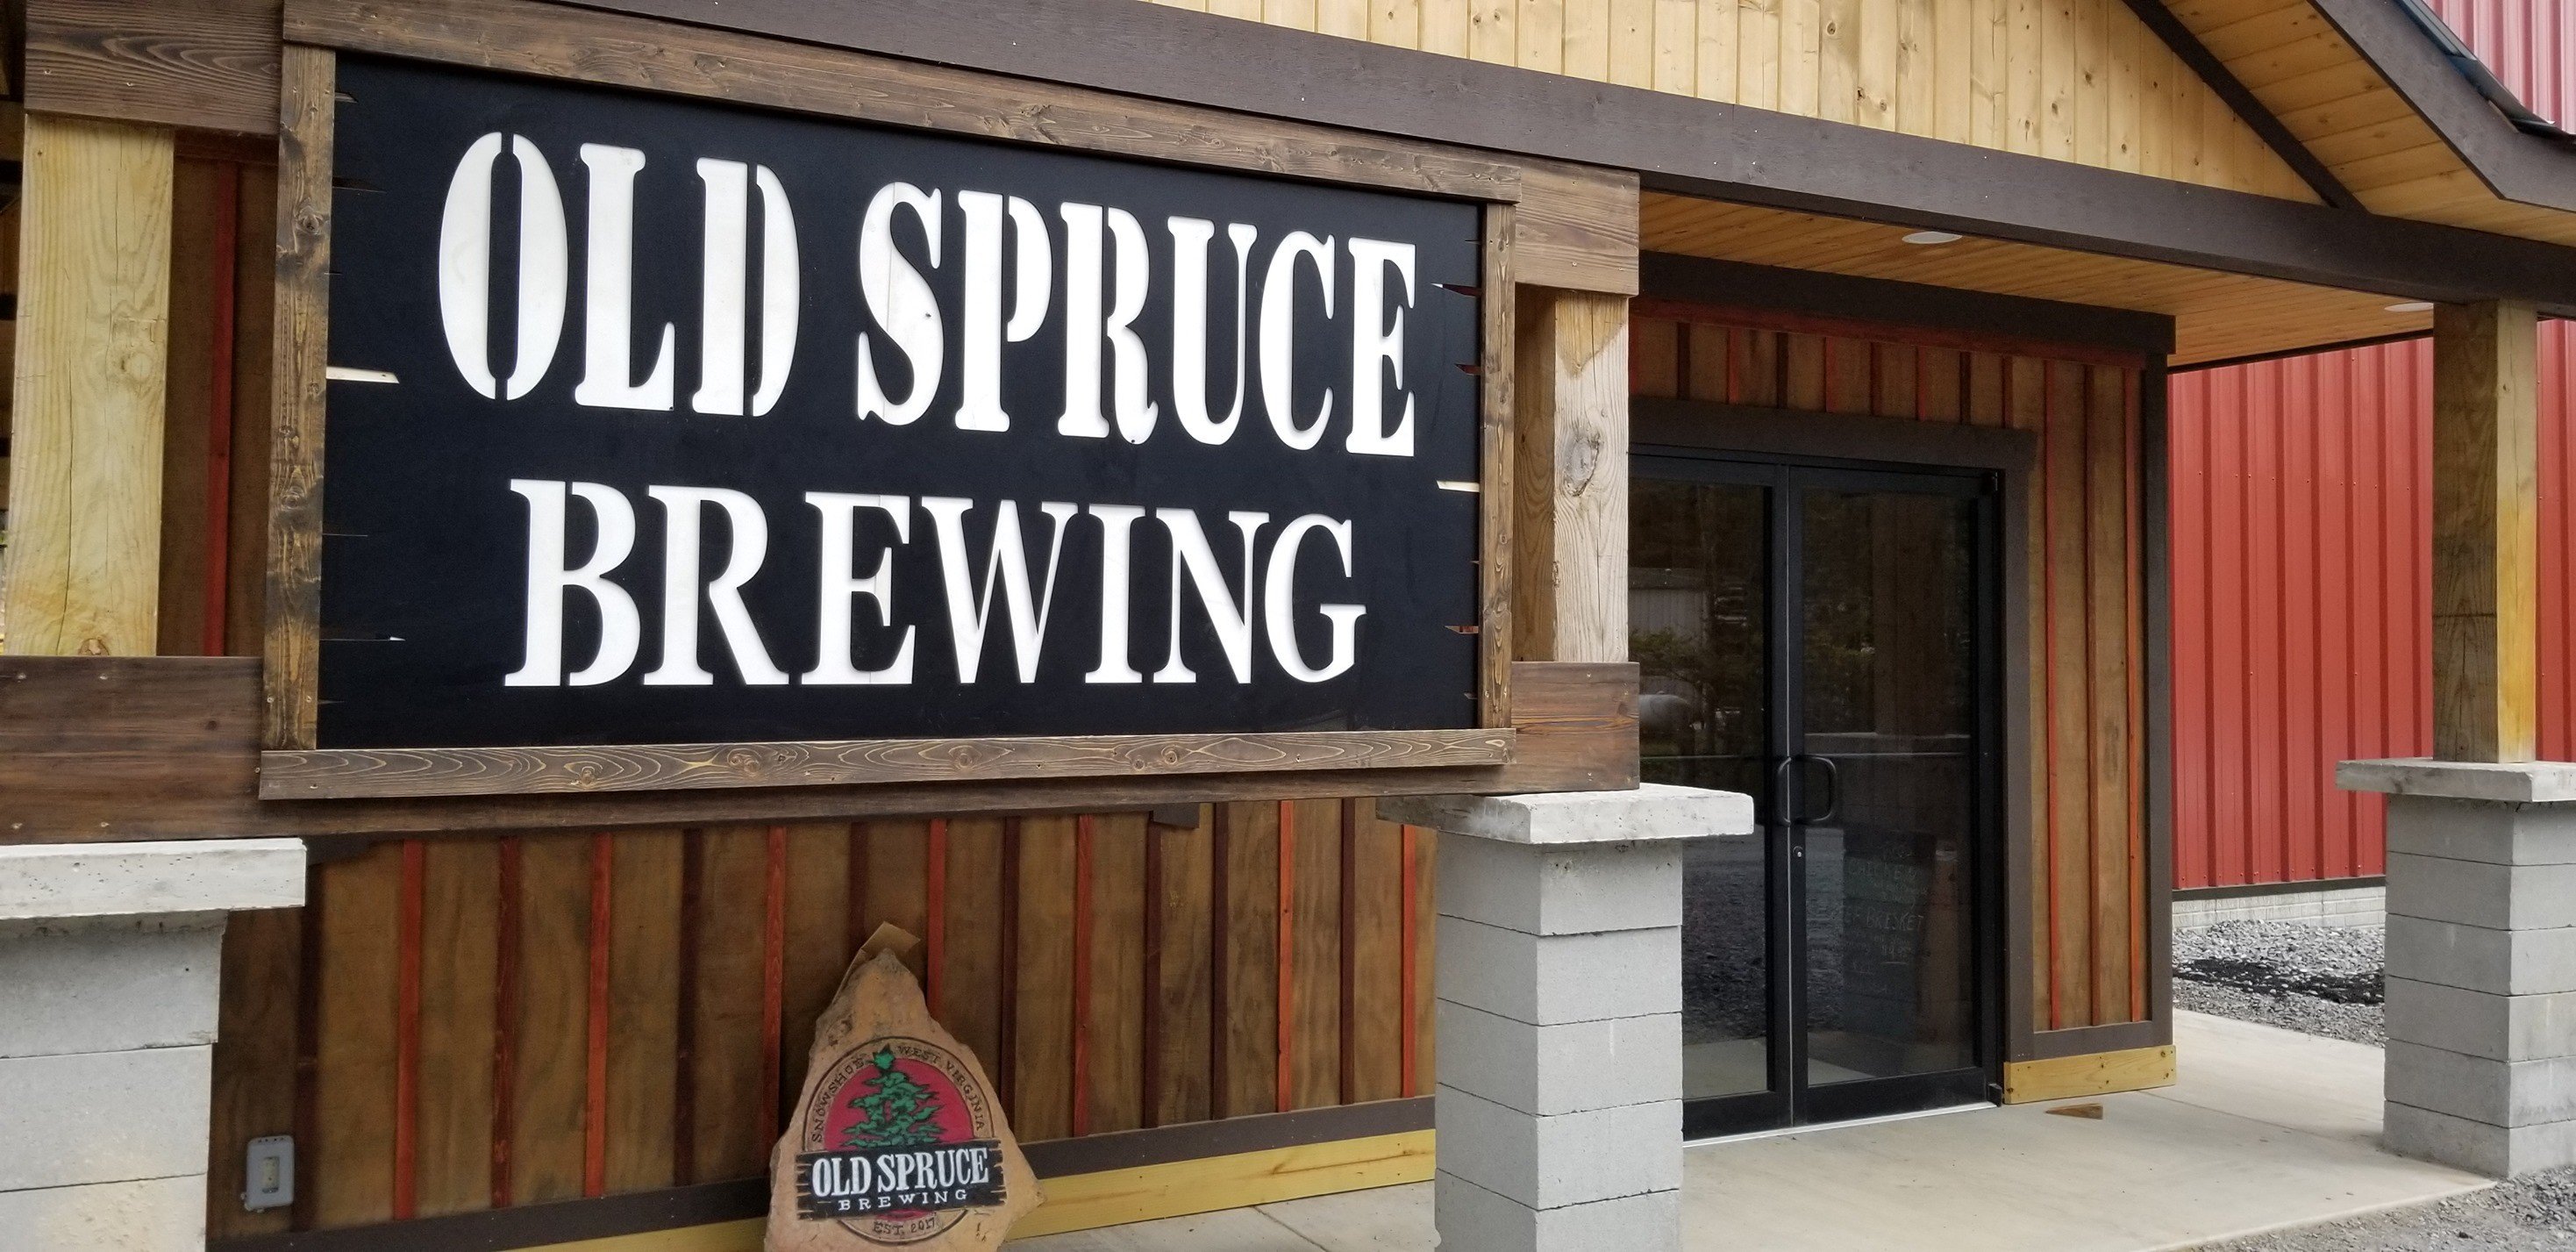 Old Spruce Brewing Brauerei aus Vereinigte Staaten